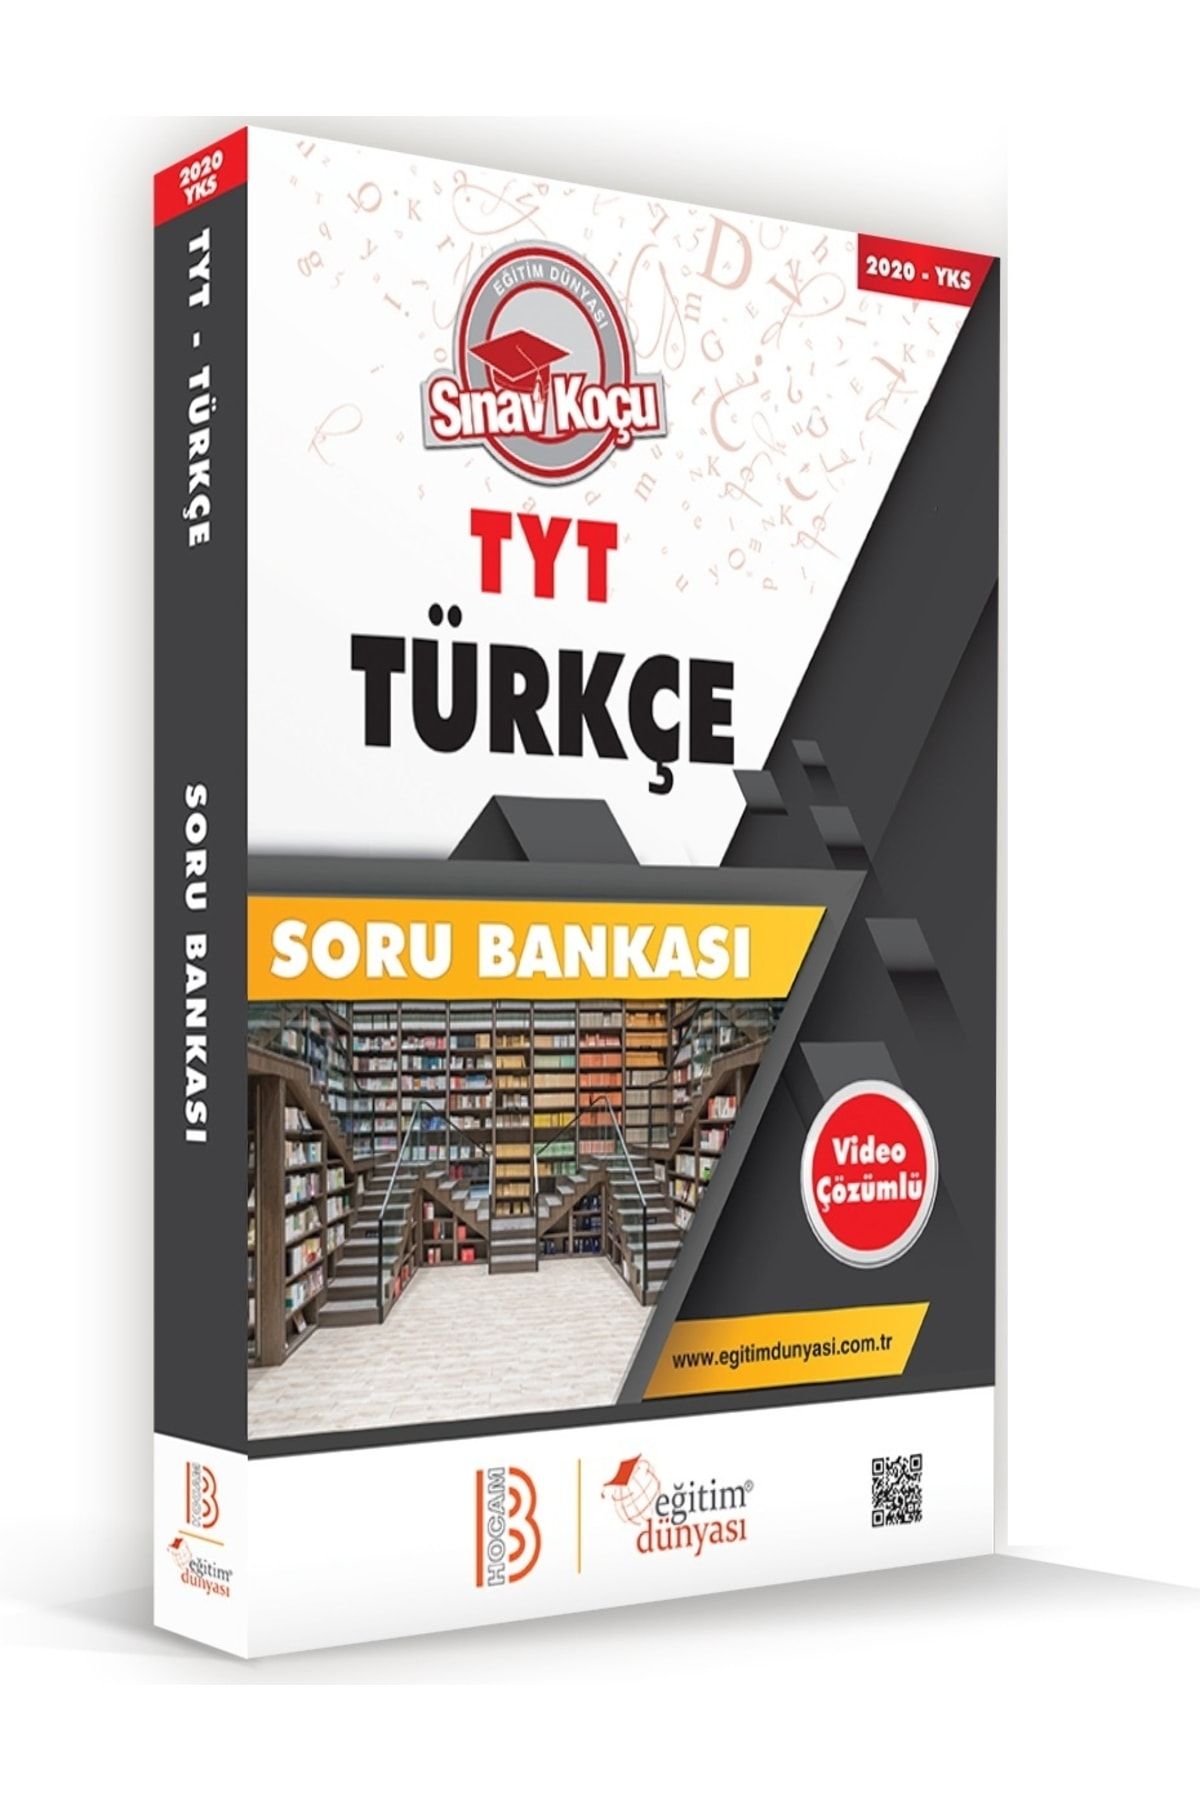 Eğitim Dünyası Tyt Türkçe Sınav Koçu Soru Bankası